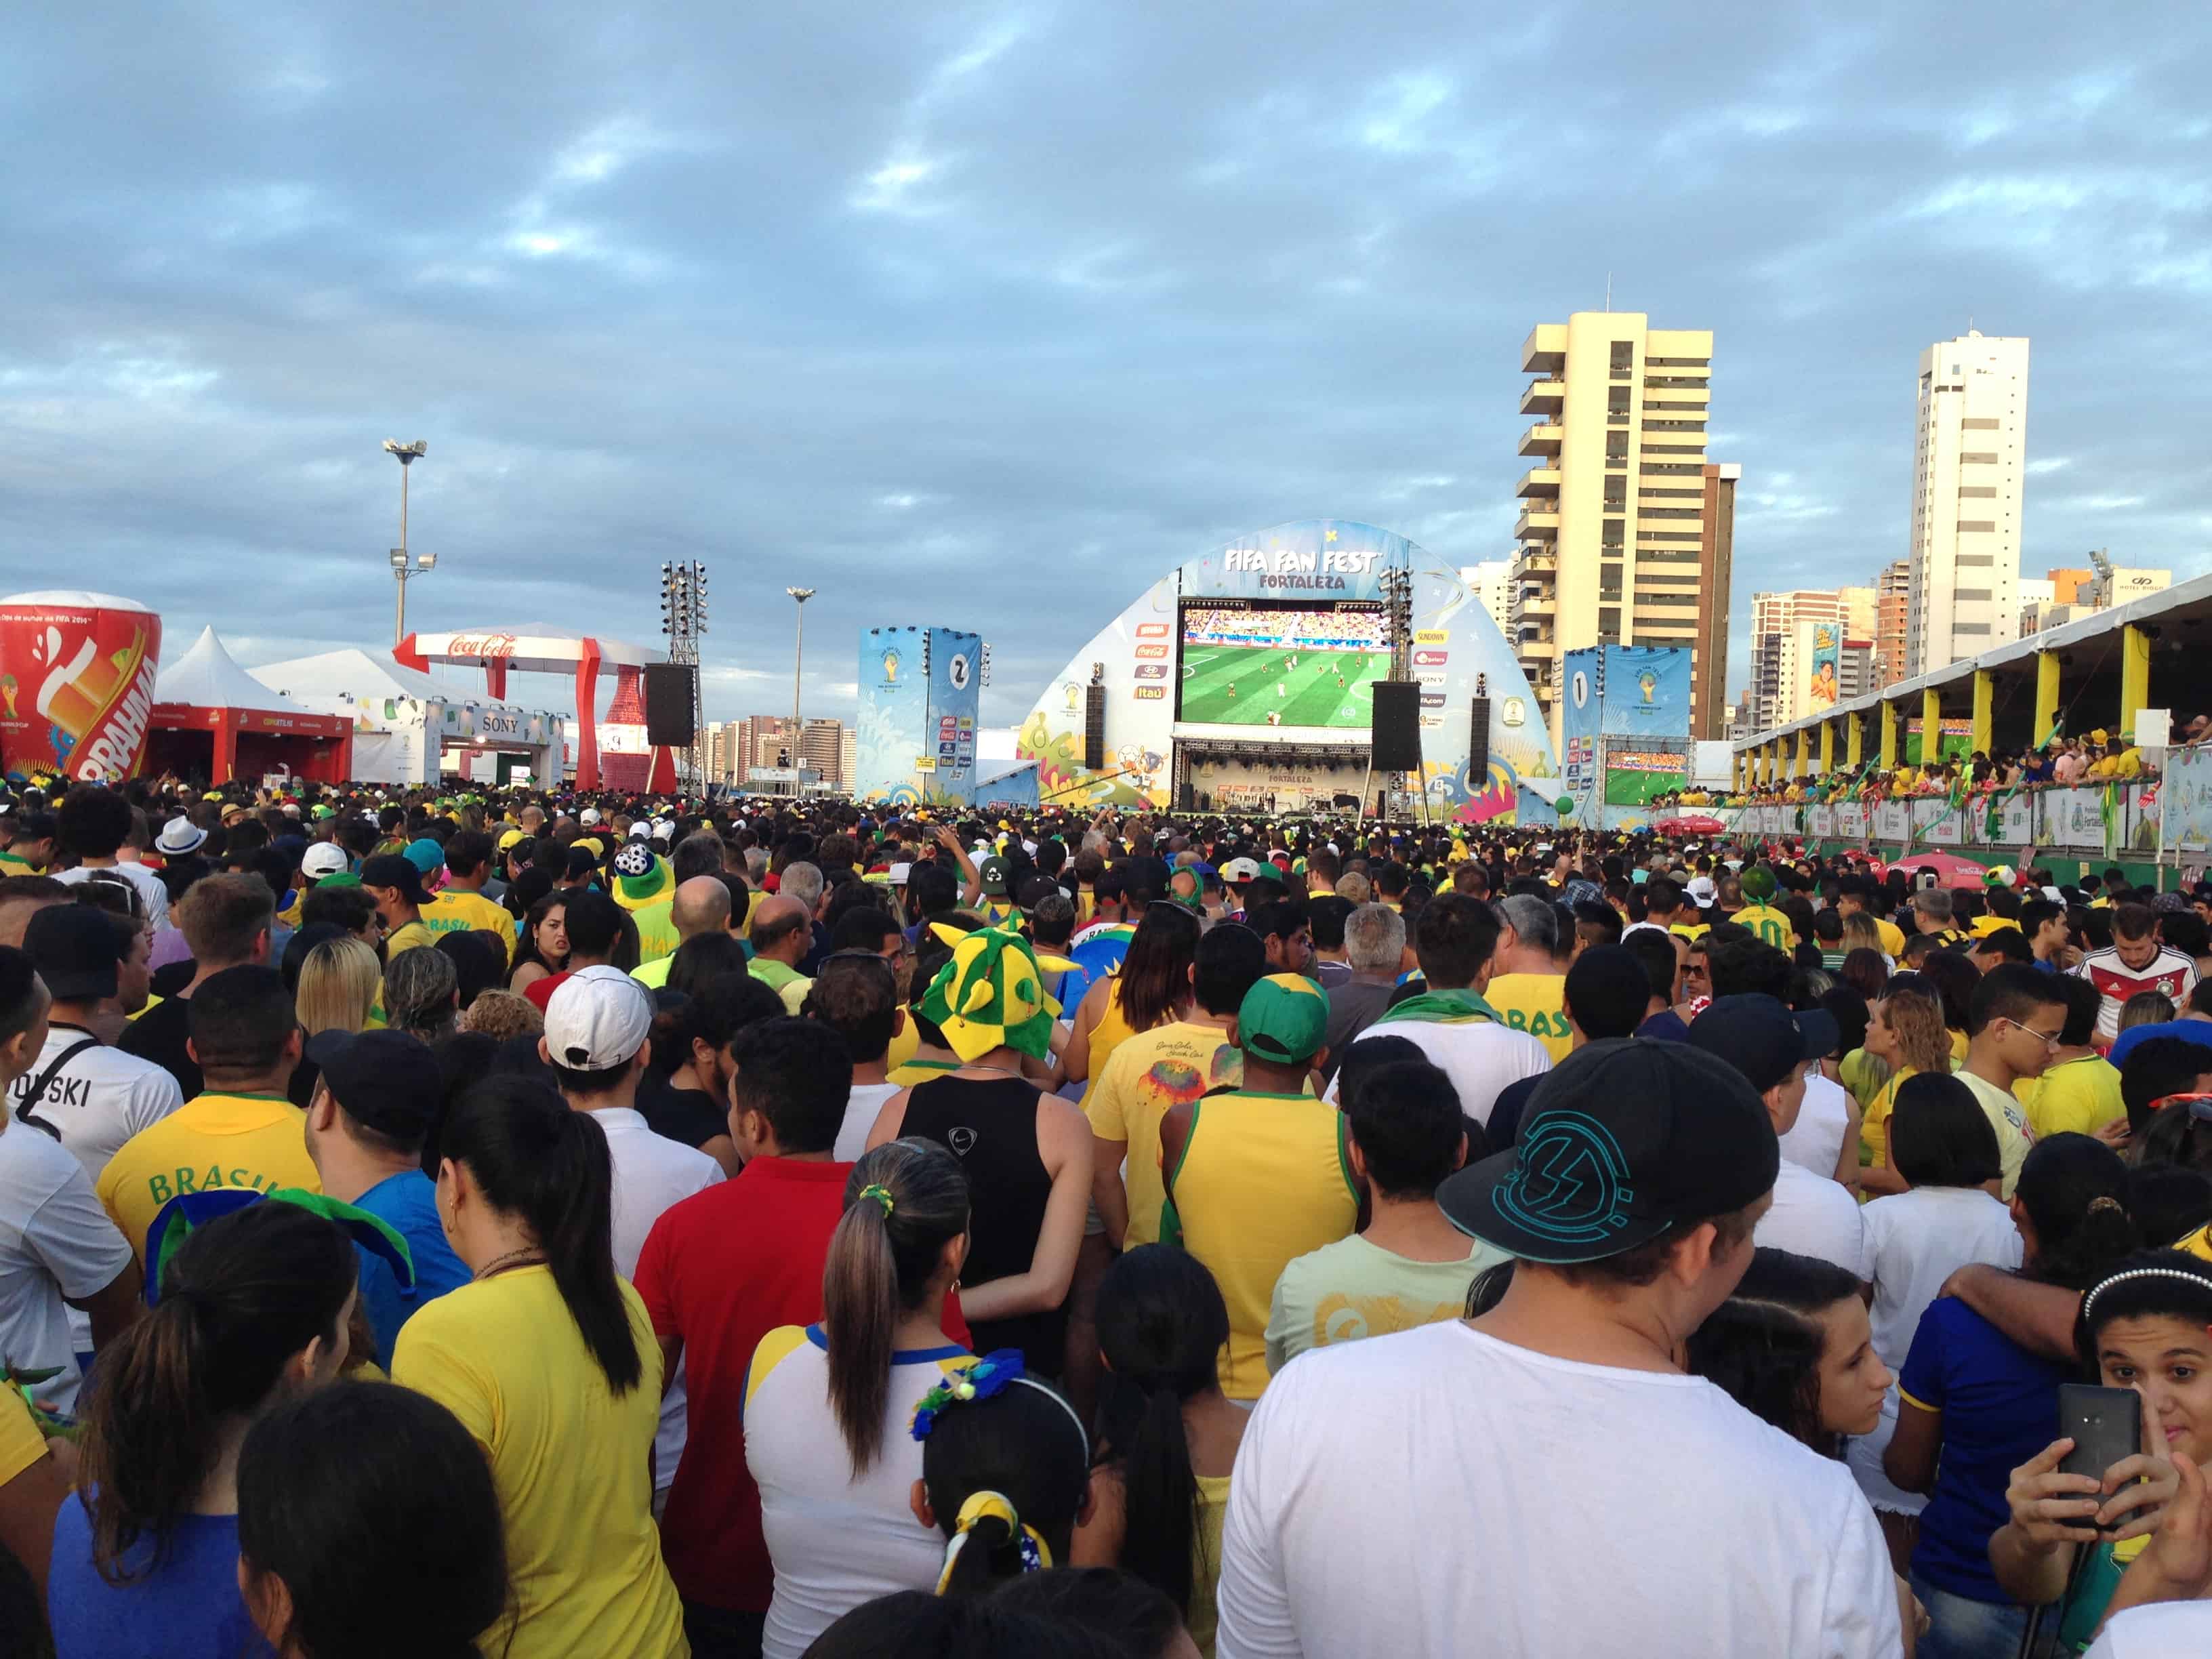 FIFA Fan Fest World Cup 2014 in Fortaleza, Brazil